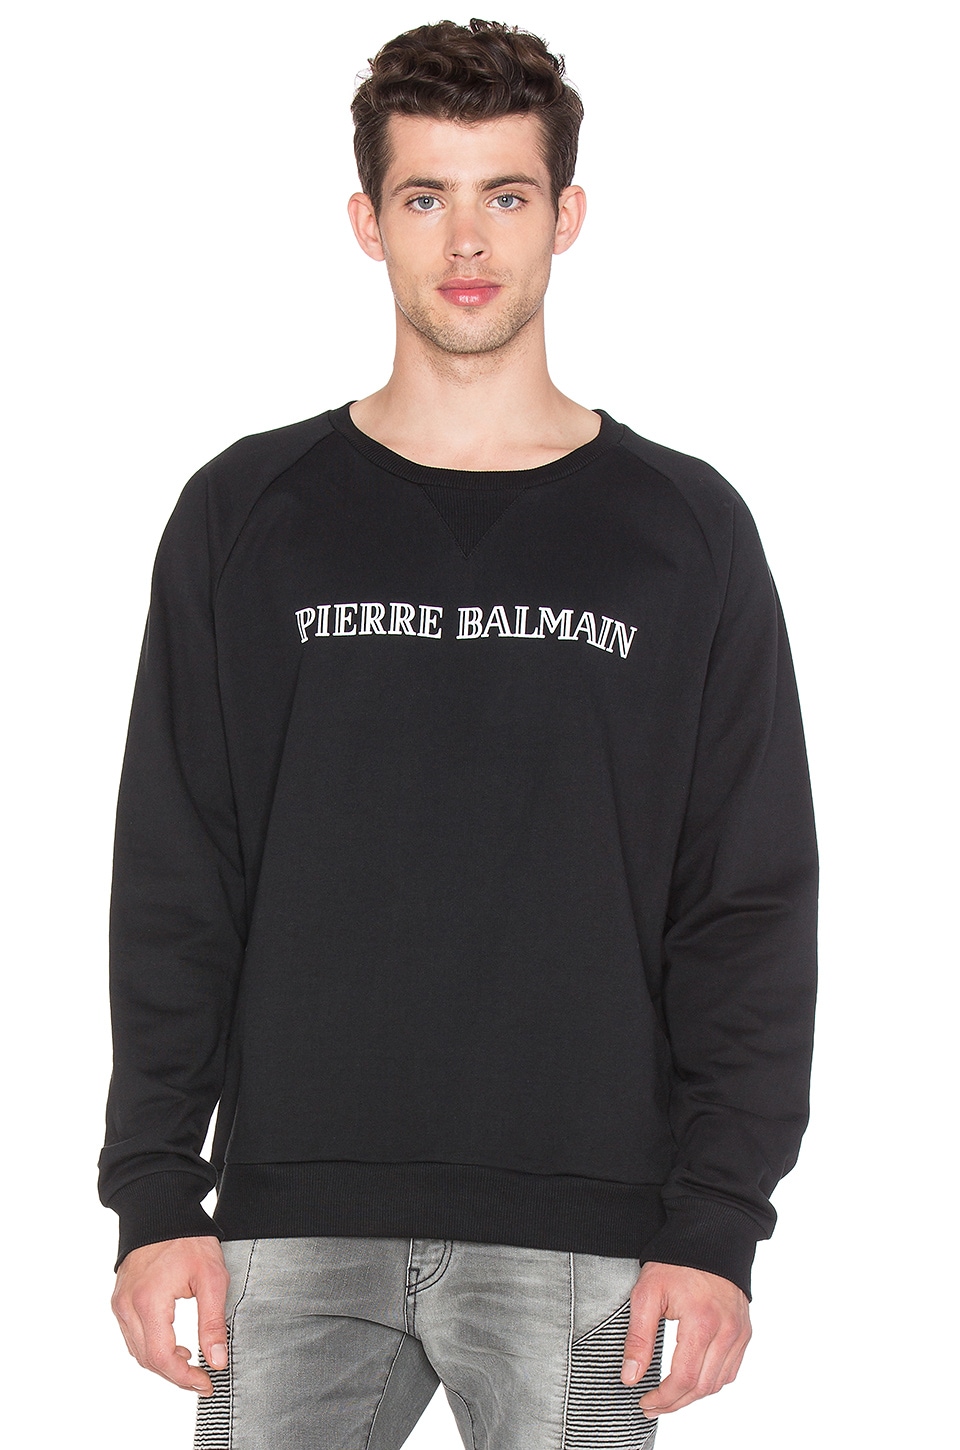 Pierre Balmain Sweatshirt Shop, - raptorunderlayment.com